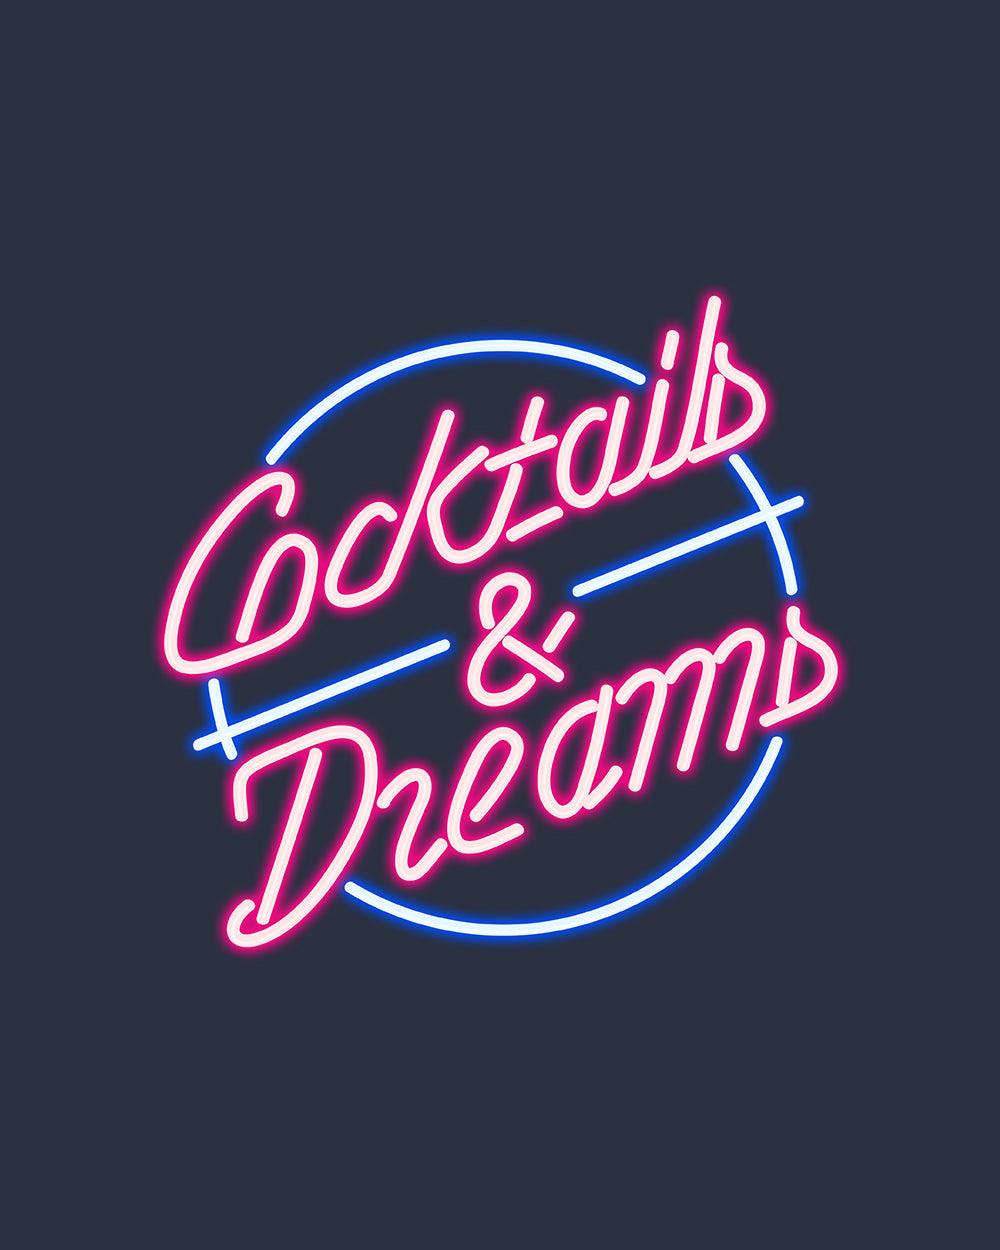 Cocktails and Dreams T-Shirt Australia Online #colour_navy